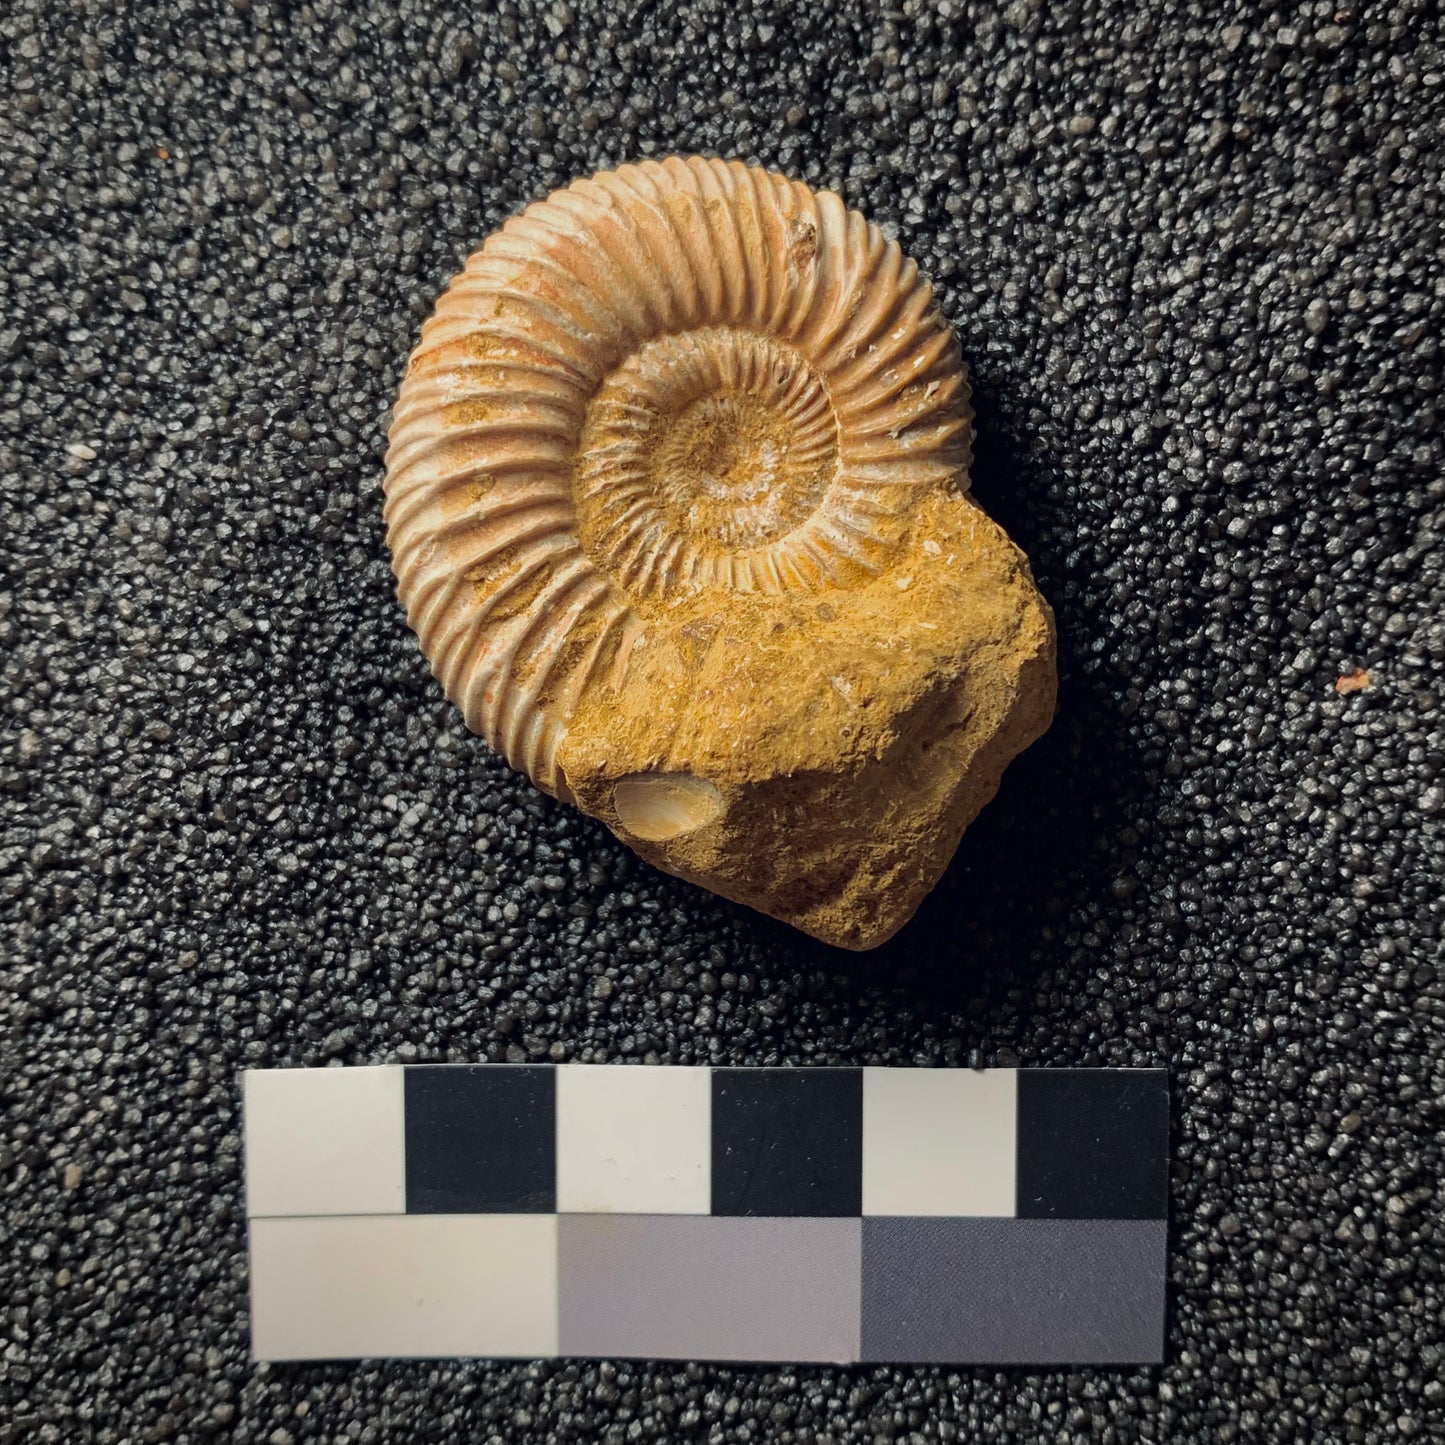 F155 | Ammonite | Perisphinctes sp.